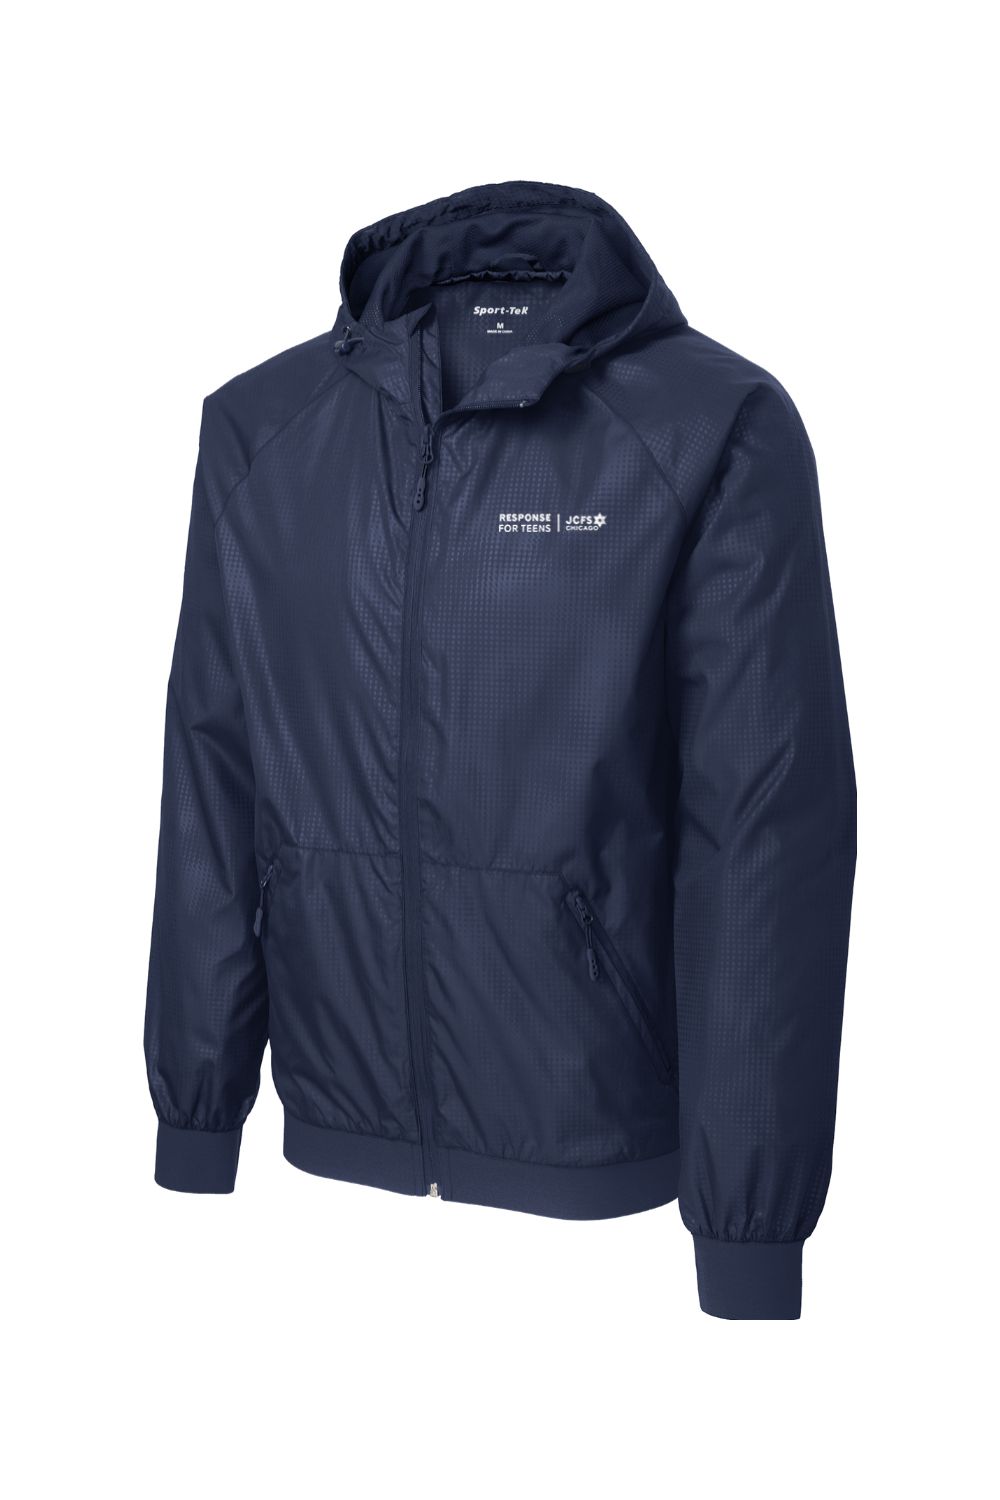 Sport-Tek® Embossed Hooded Wind Jacket